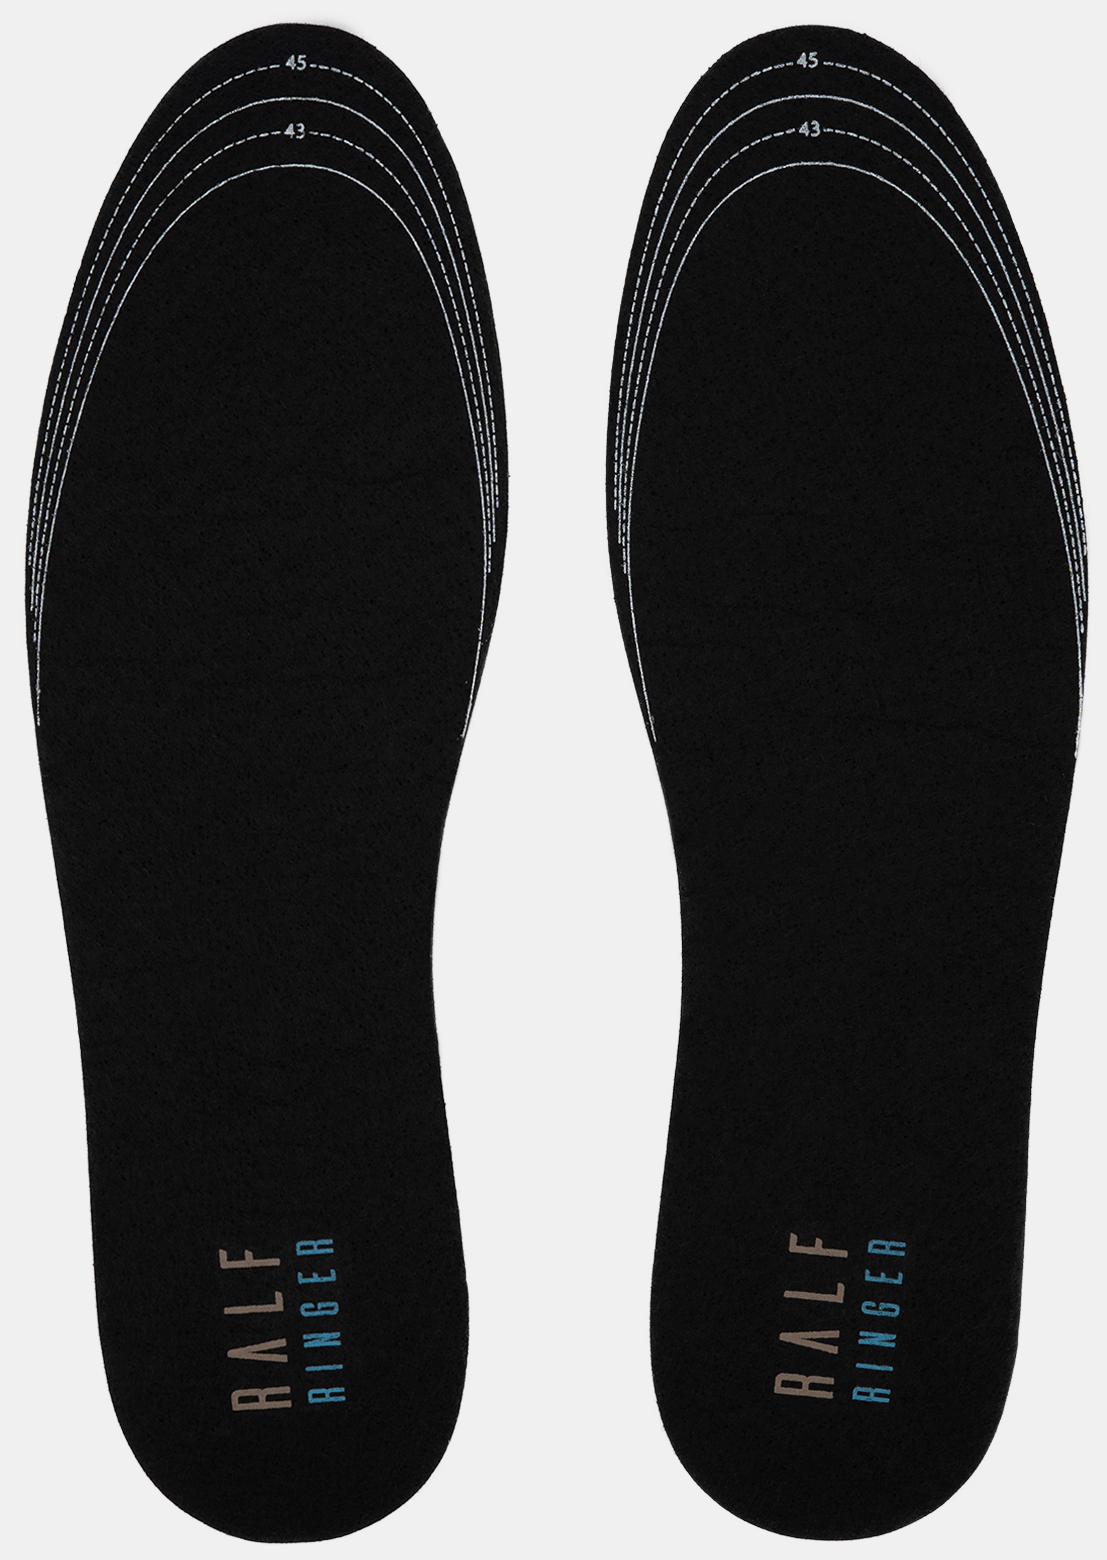 Стельки для обуви женские Ralf Ringer 1115 46 RU